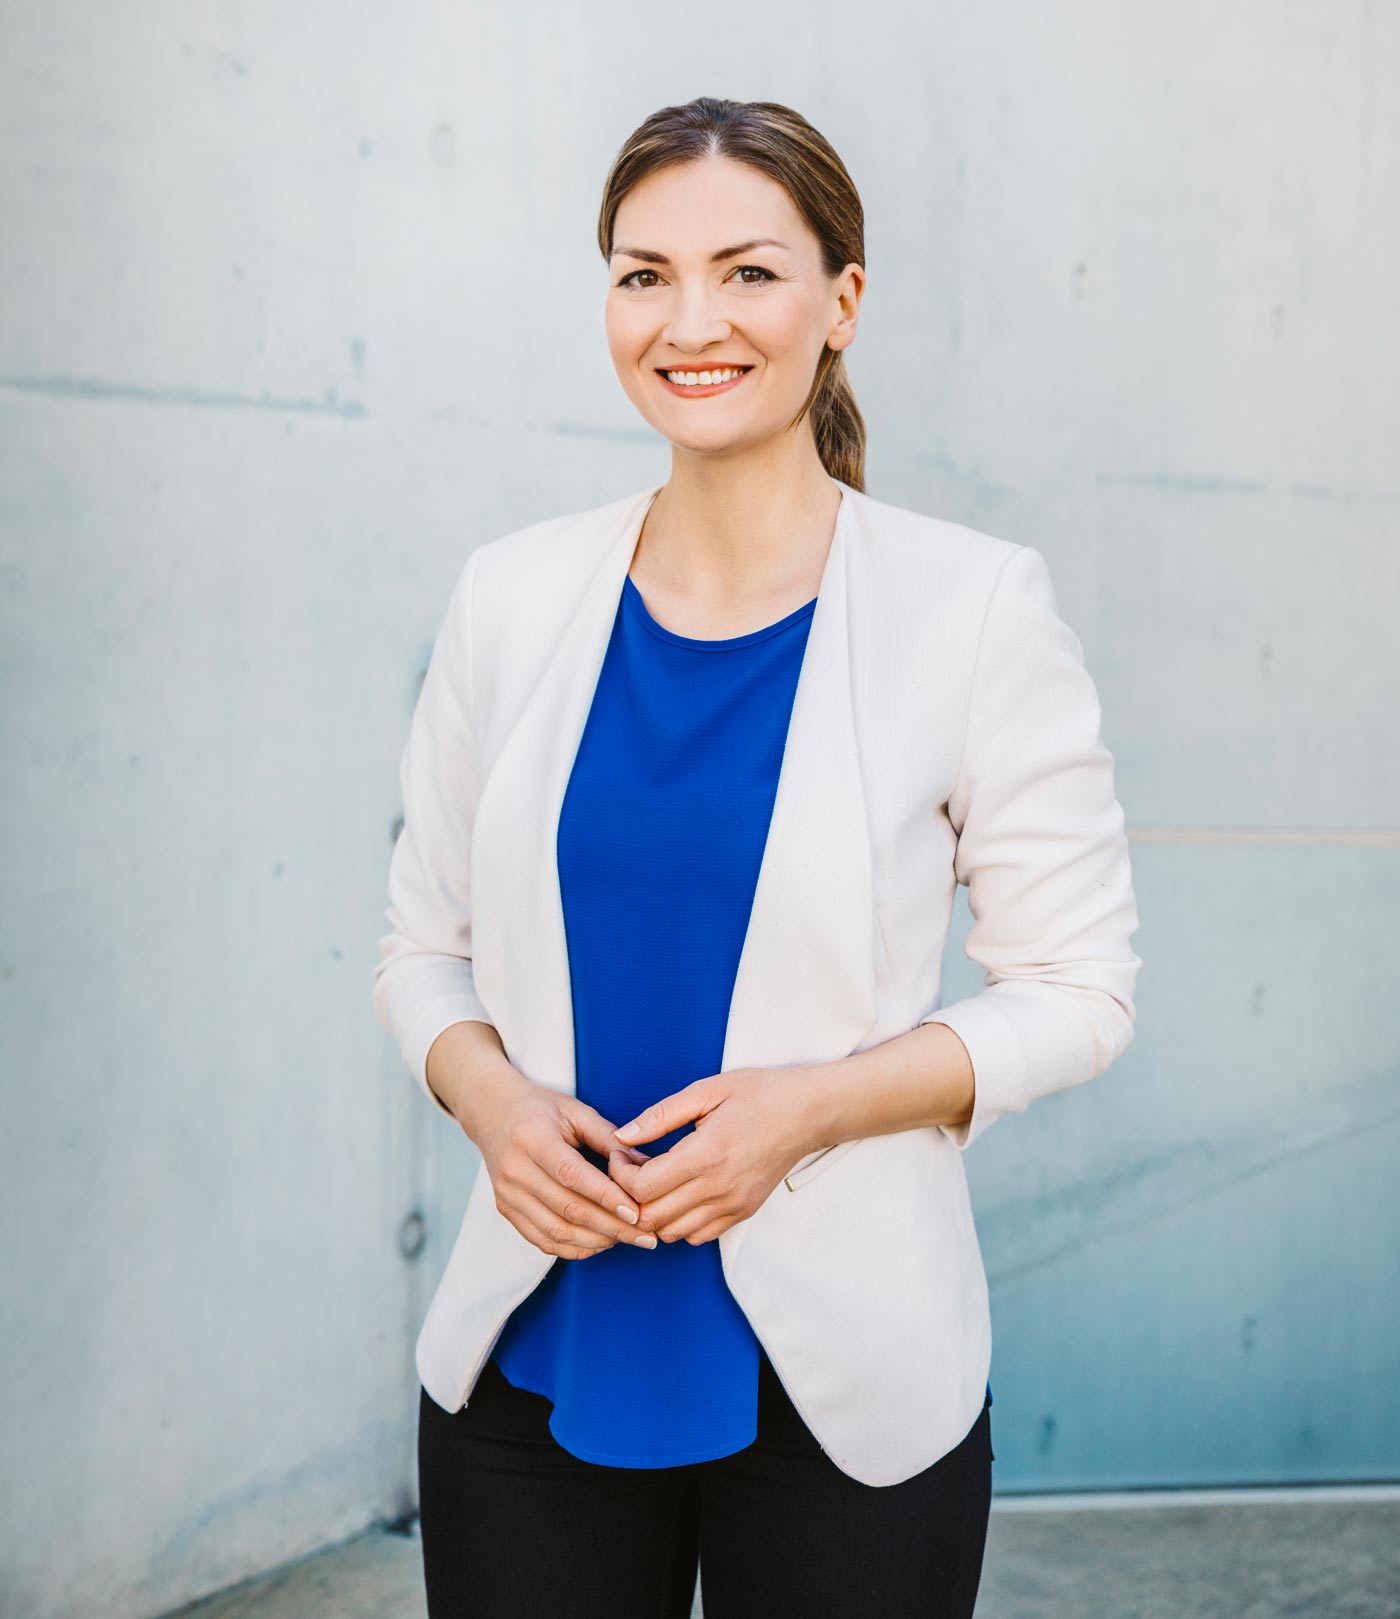 Die Bayerische Staatsministerin für Digitales, Judith Gerlach, in einem weißen Jacket und einem blauen T-Shirt lächelnd vor einer hellen Steinwand.